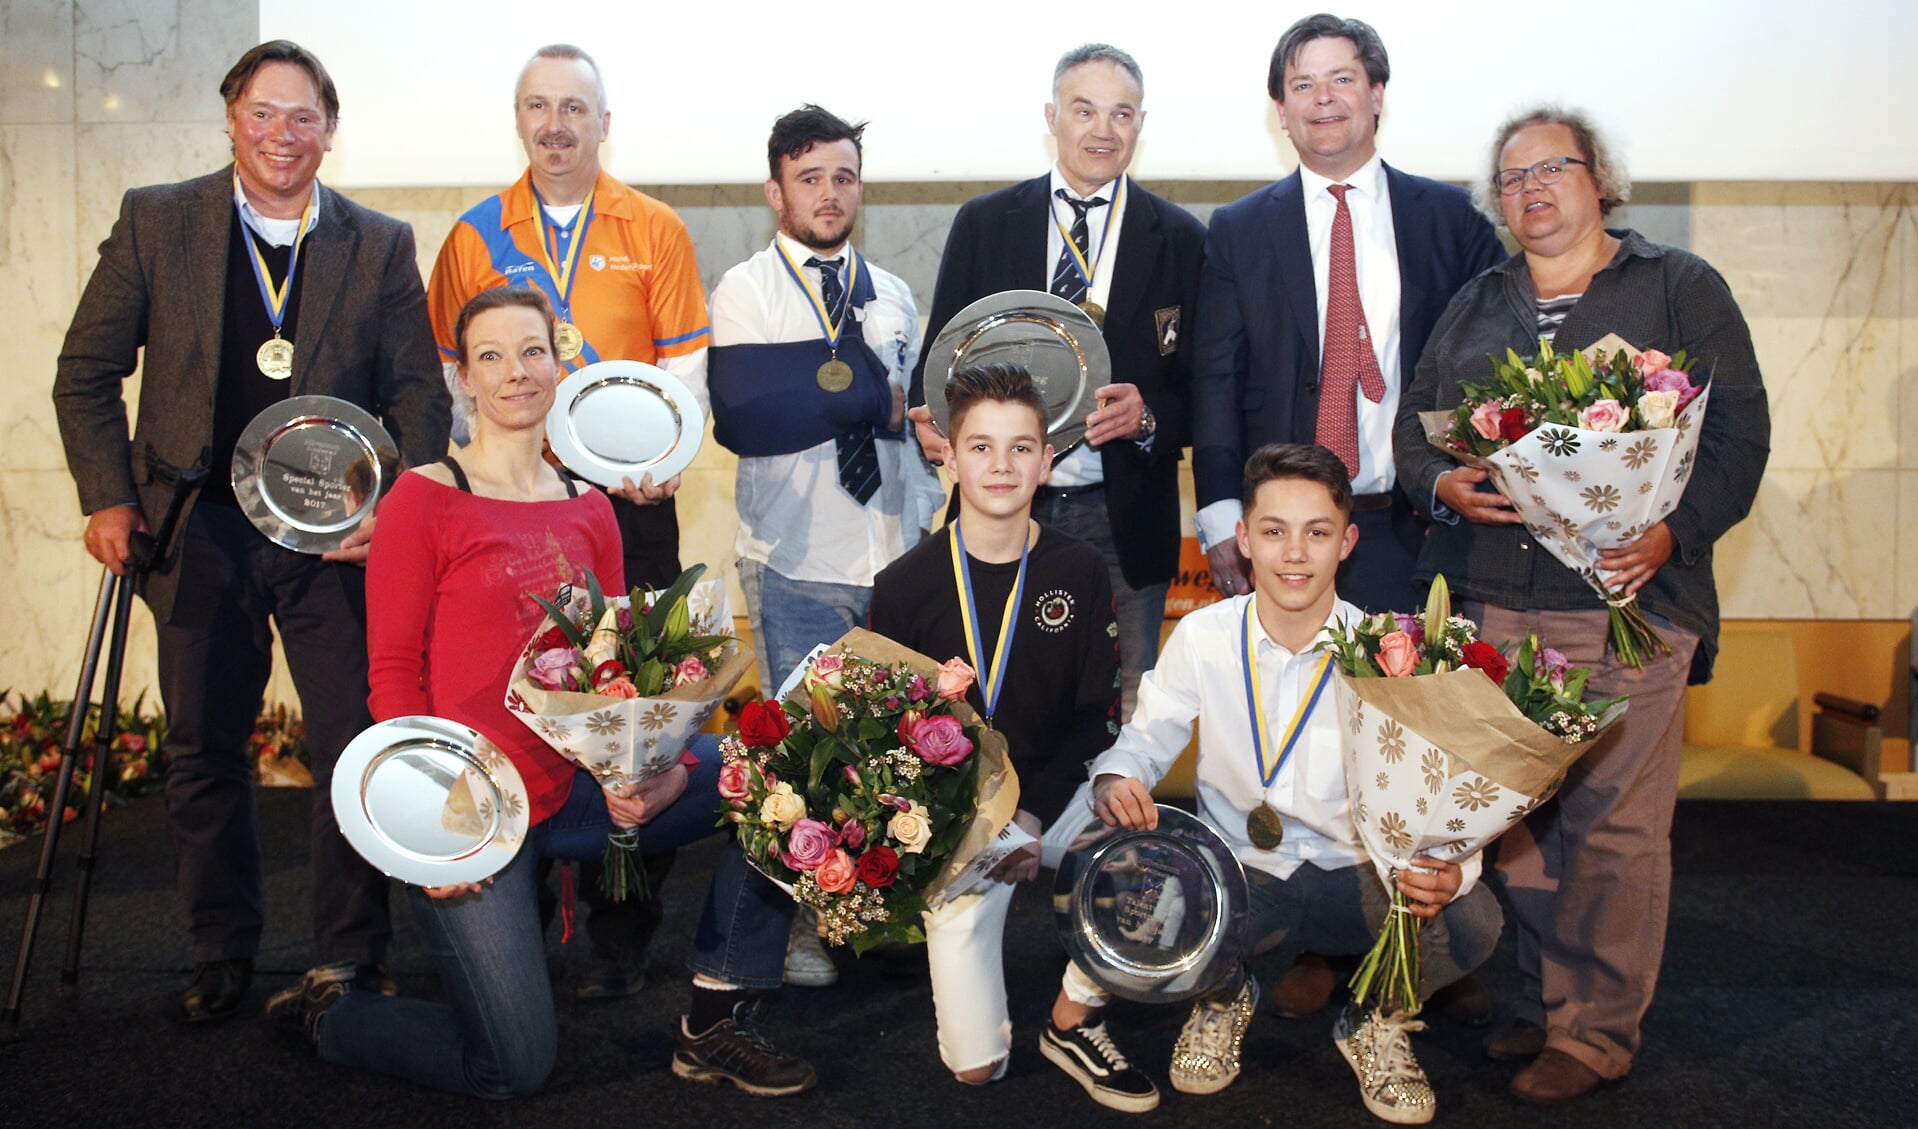 De winnaars samen met wethouder Floris Voorink van sport. 